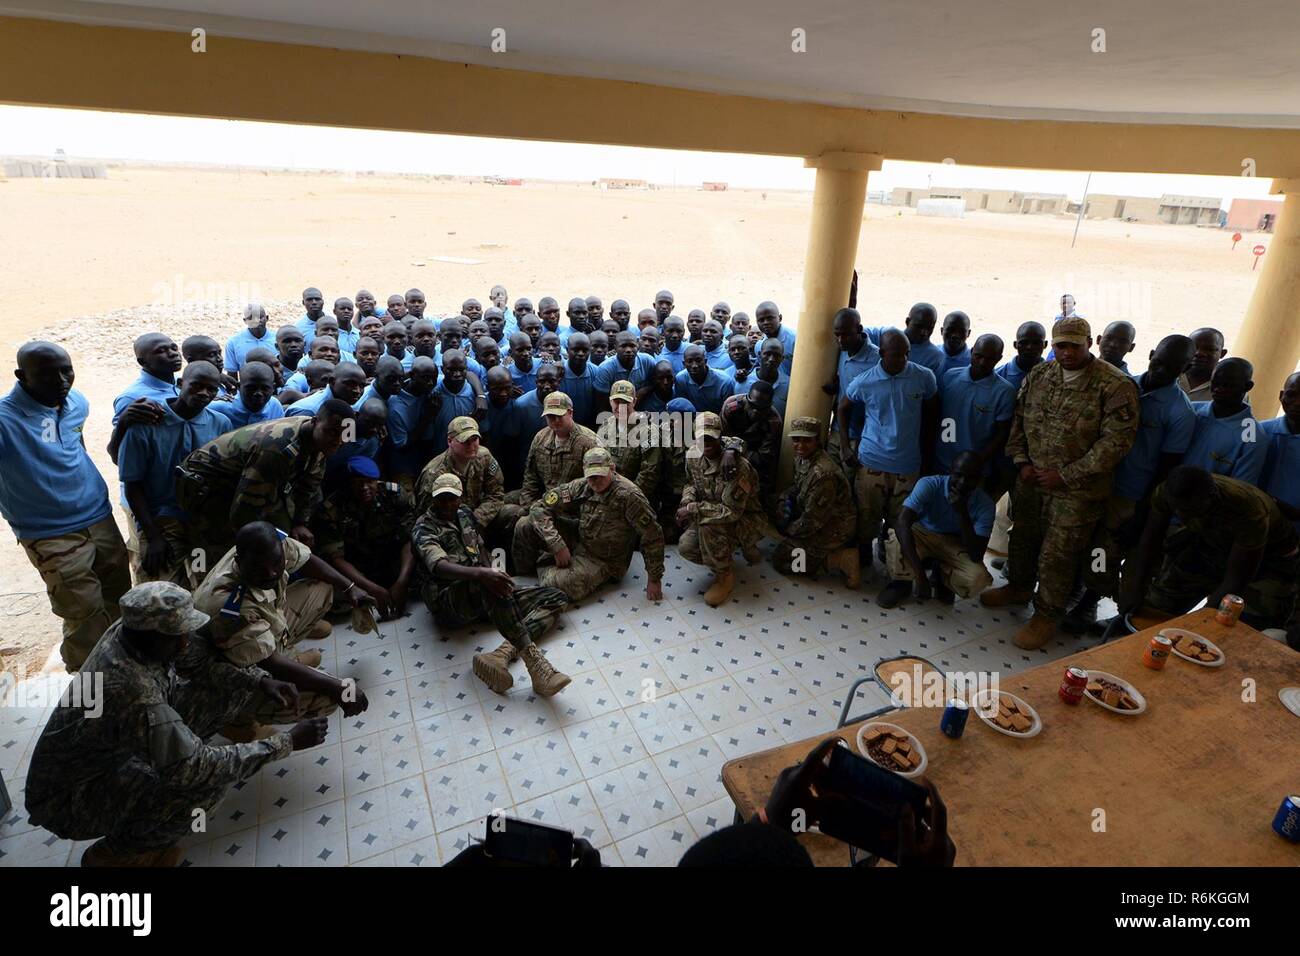 Mitglieder Des Forces Armées Nigeriennes und Fliegern eingesetzt in die 724Th Air Base Expeditionary Squadron für ein Bild in der Nigrischen Air Base 201, Niger, 18. Mai 2017 dar. Flieger wurden eingeladen, die abschlussfeier als Beweis für die Partnerschaft zwischen den beiden Armeen. Stockfoto